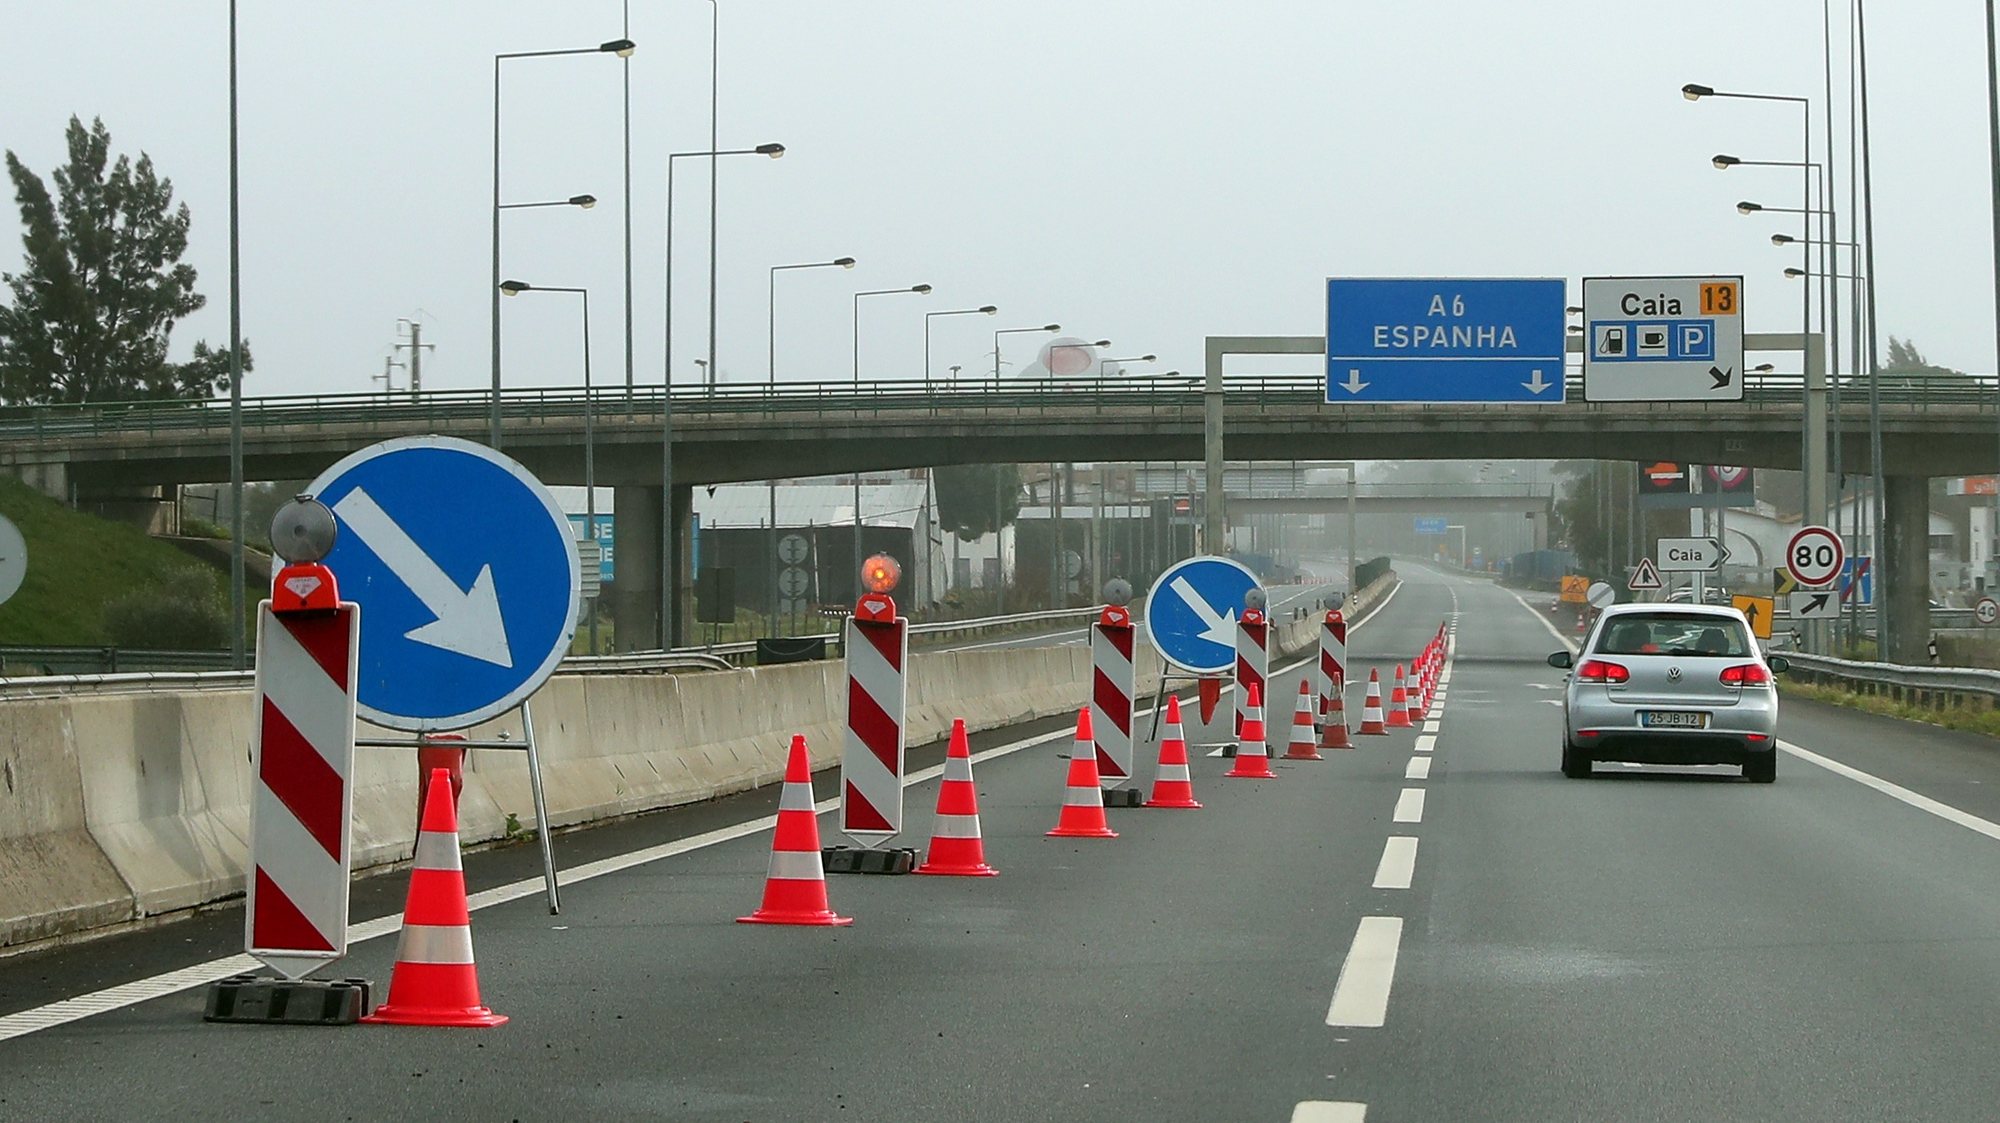 Trânsito cortado no acesso à A6 no sentido Espanha-Portugal em Elvas